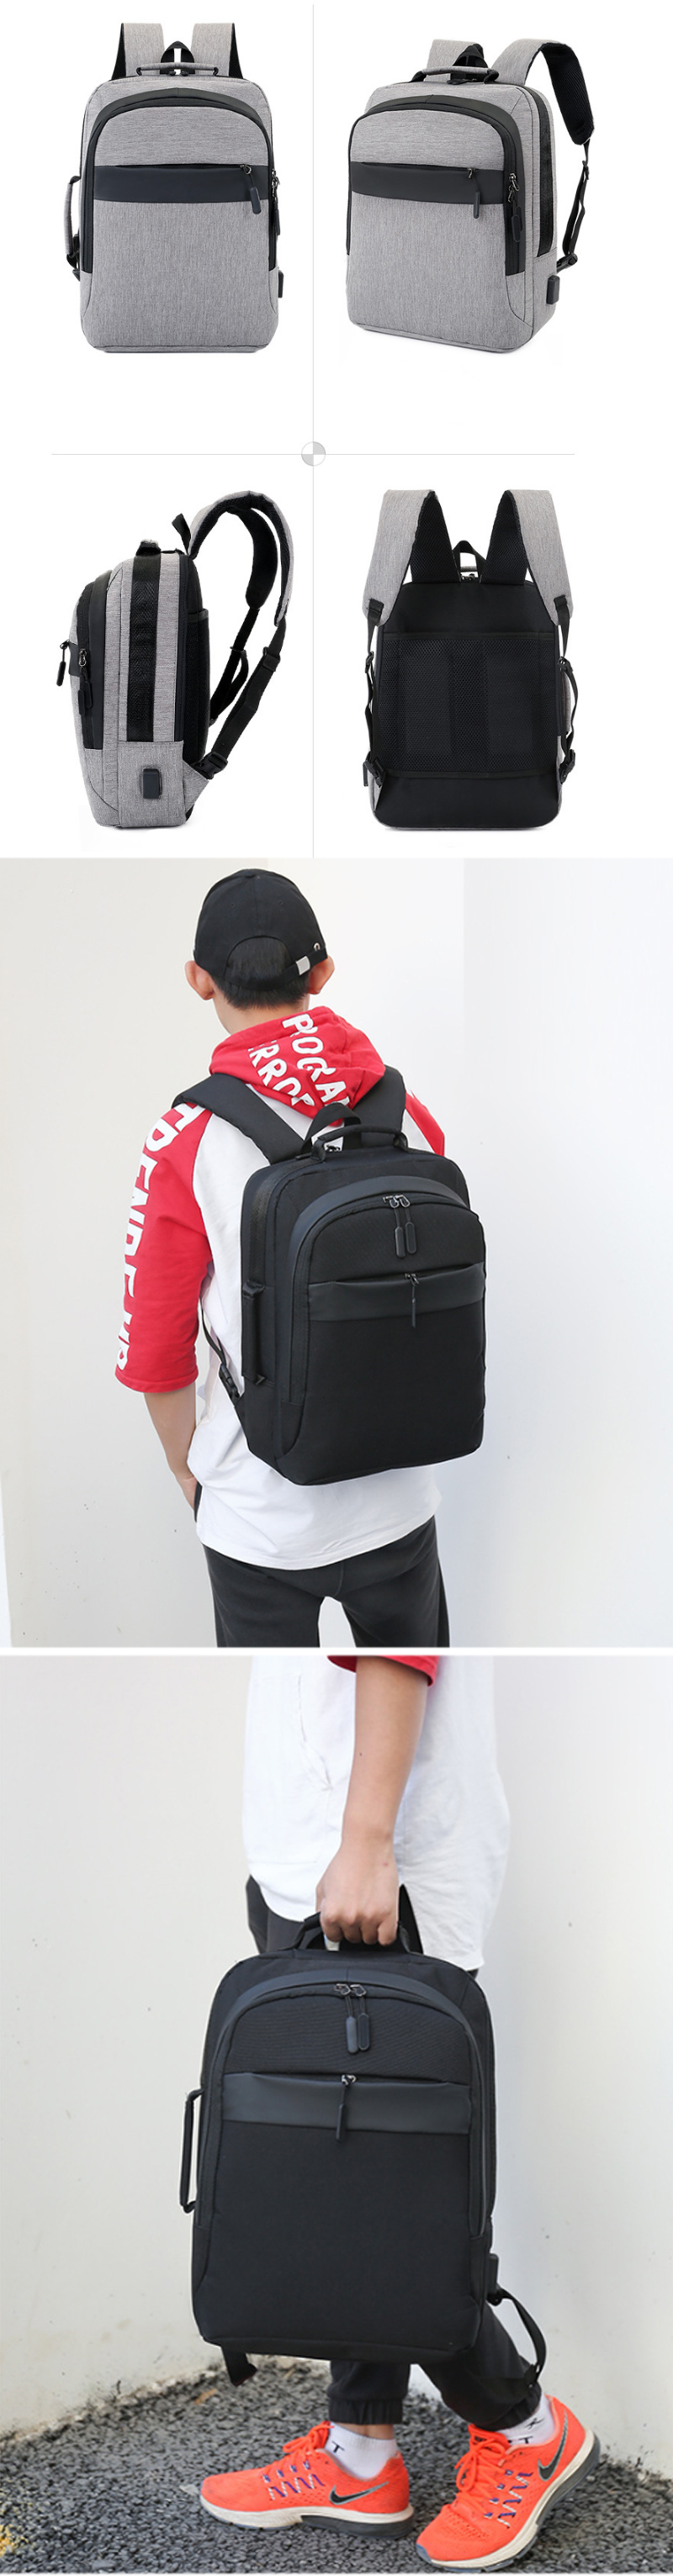 IPReereg-20L-Backpack-Travel-Waterproof-14-Inch-Laptop-Bag-Teenager-School-Bag-Shoulder-Bag-1373574-3